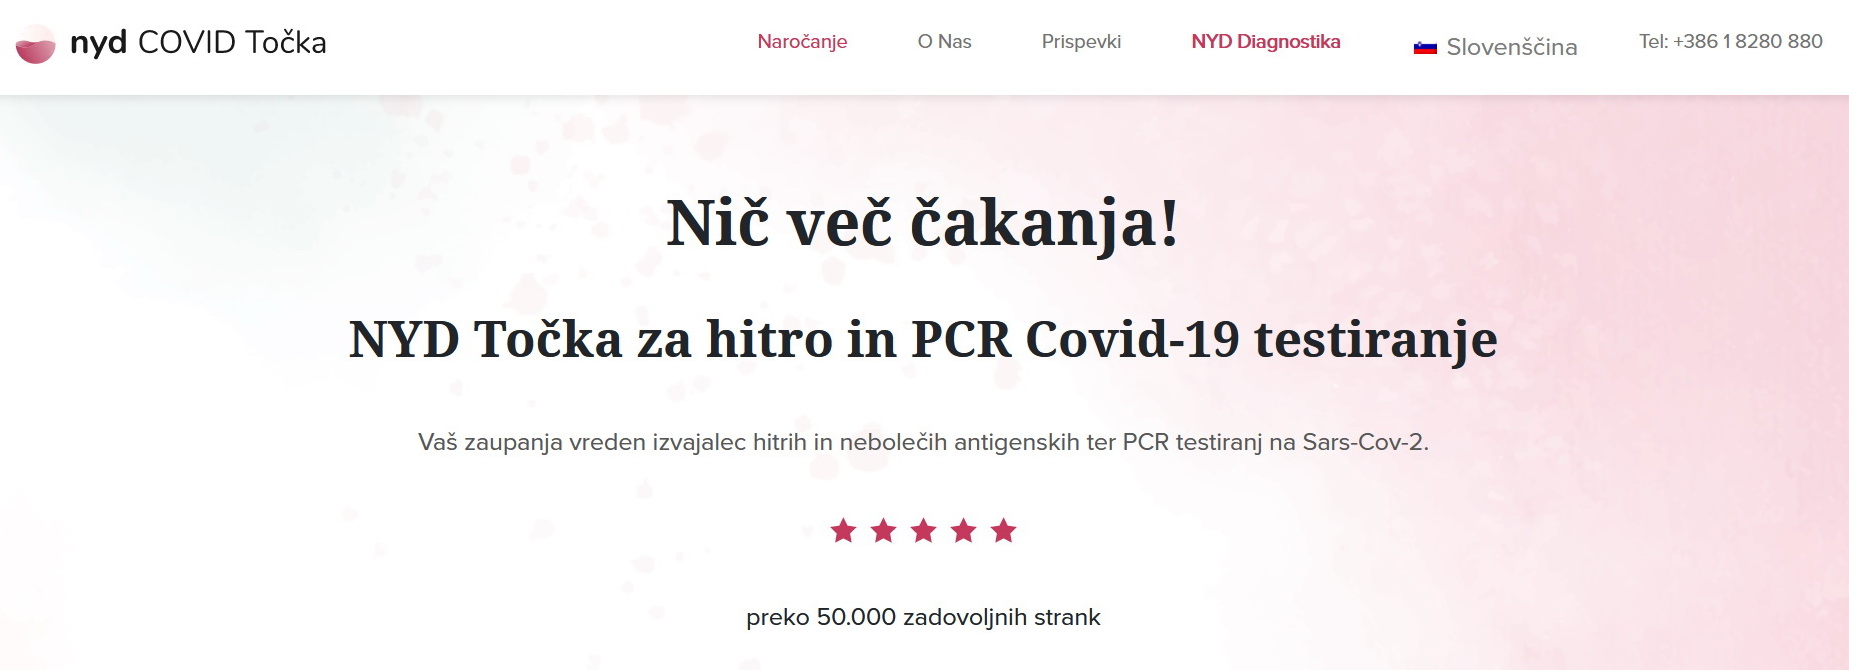 NYD - covid testiranje Ljubljana, Celje, Maribor in Koper